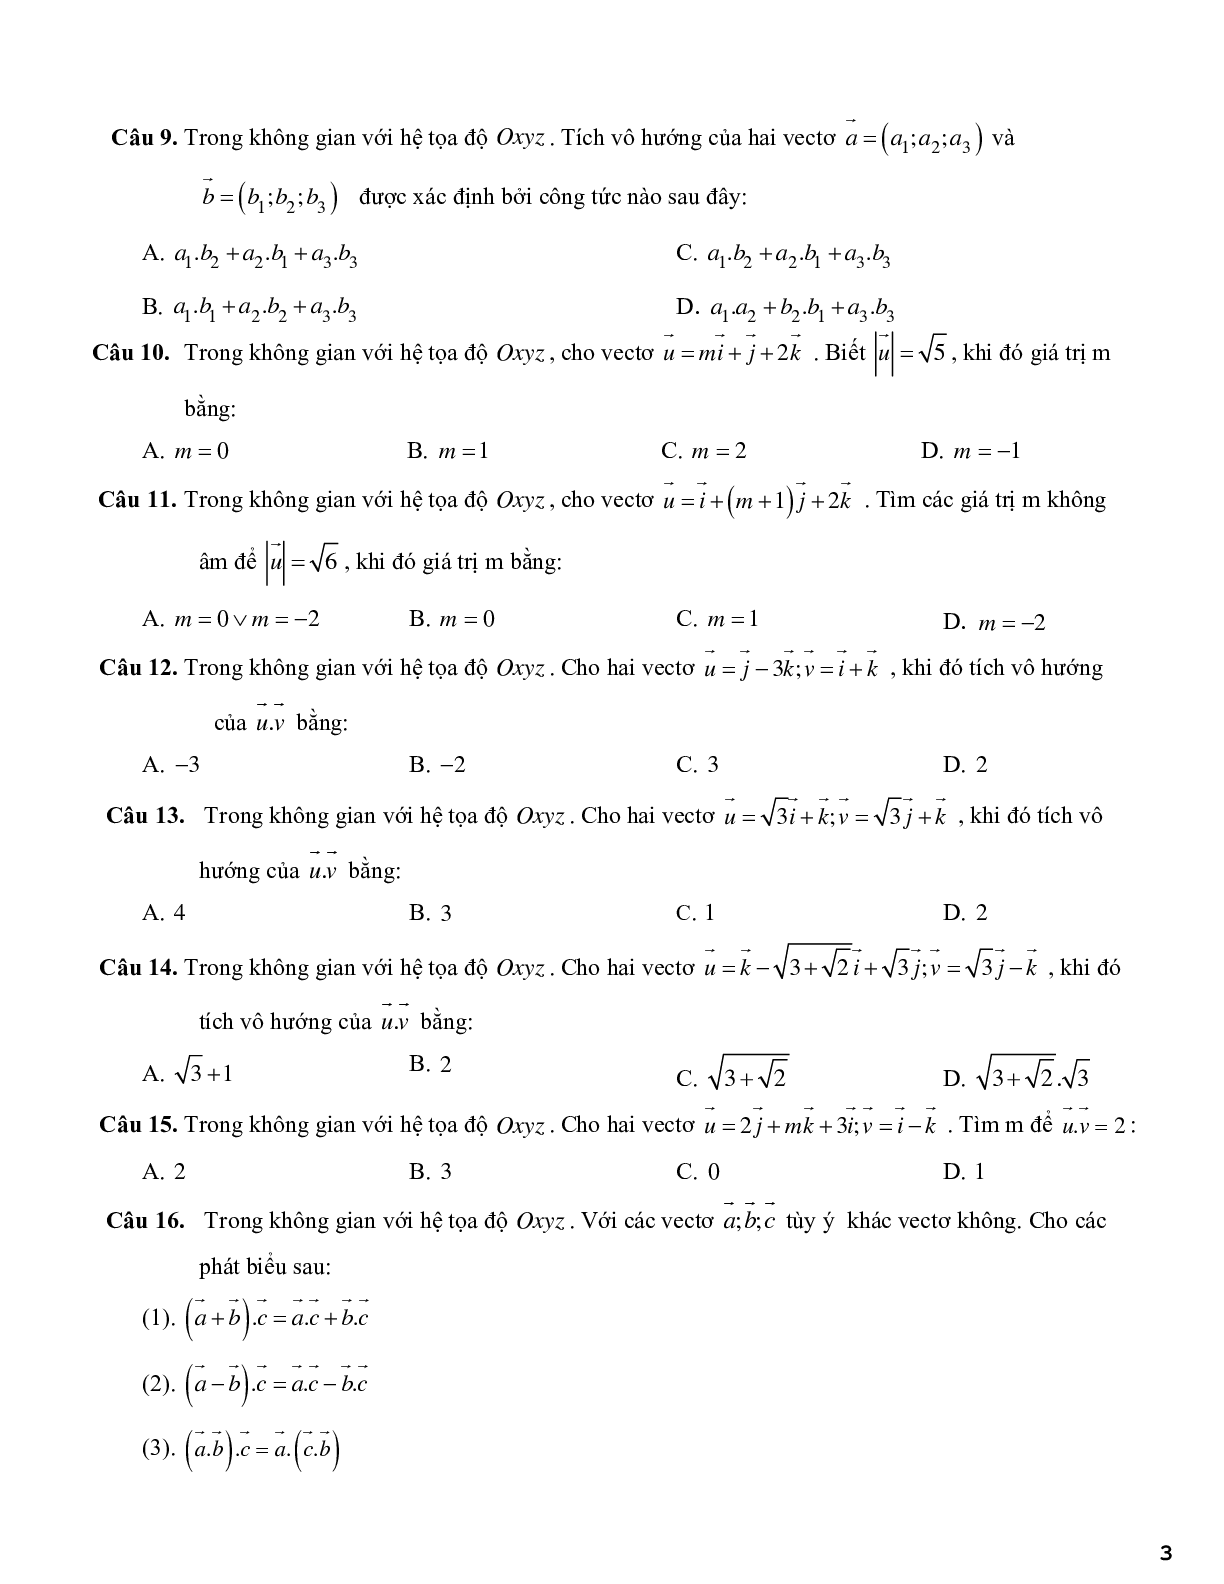 420 câu trắc nghiệm phương pháp tọa độ trong không gian - có đáp án (trang 3)